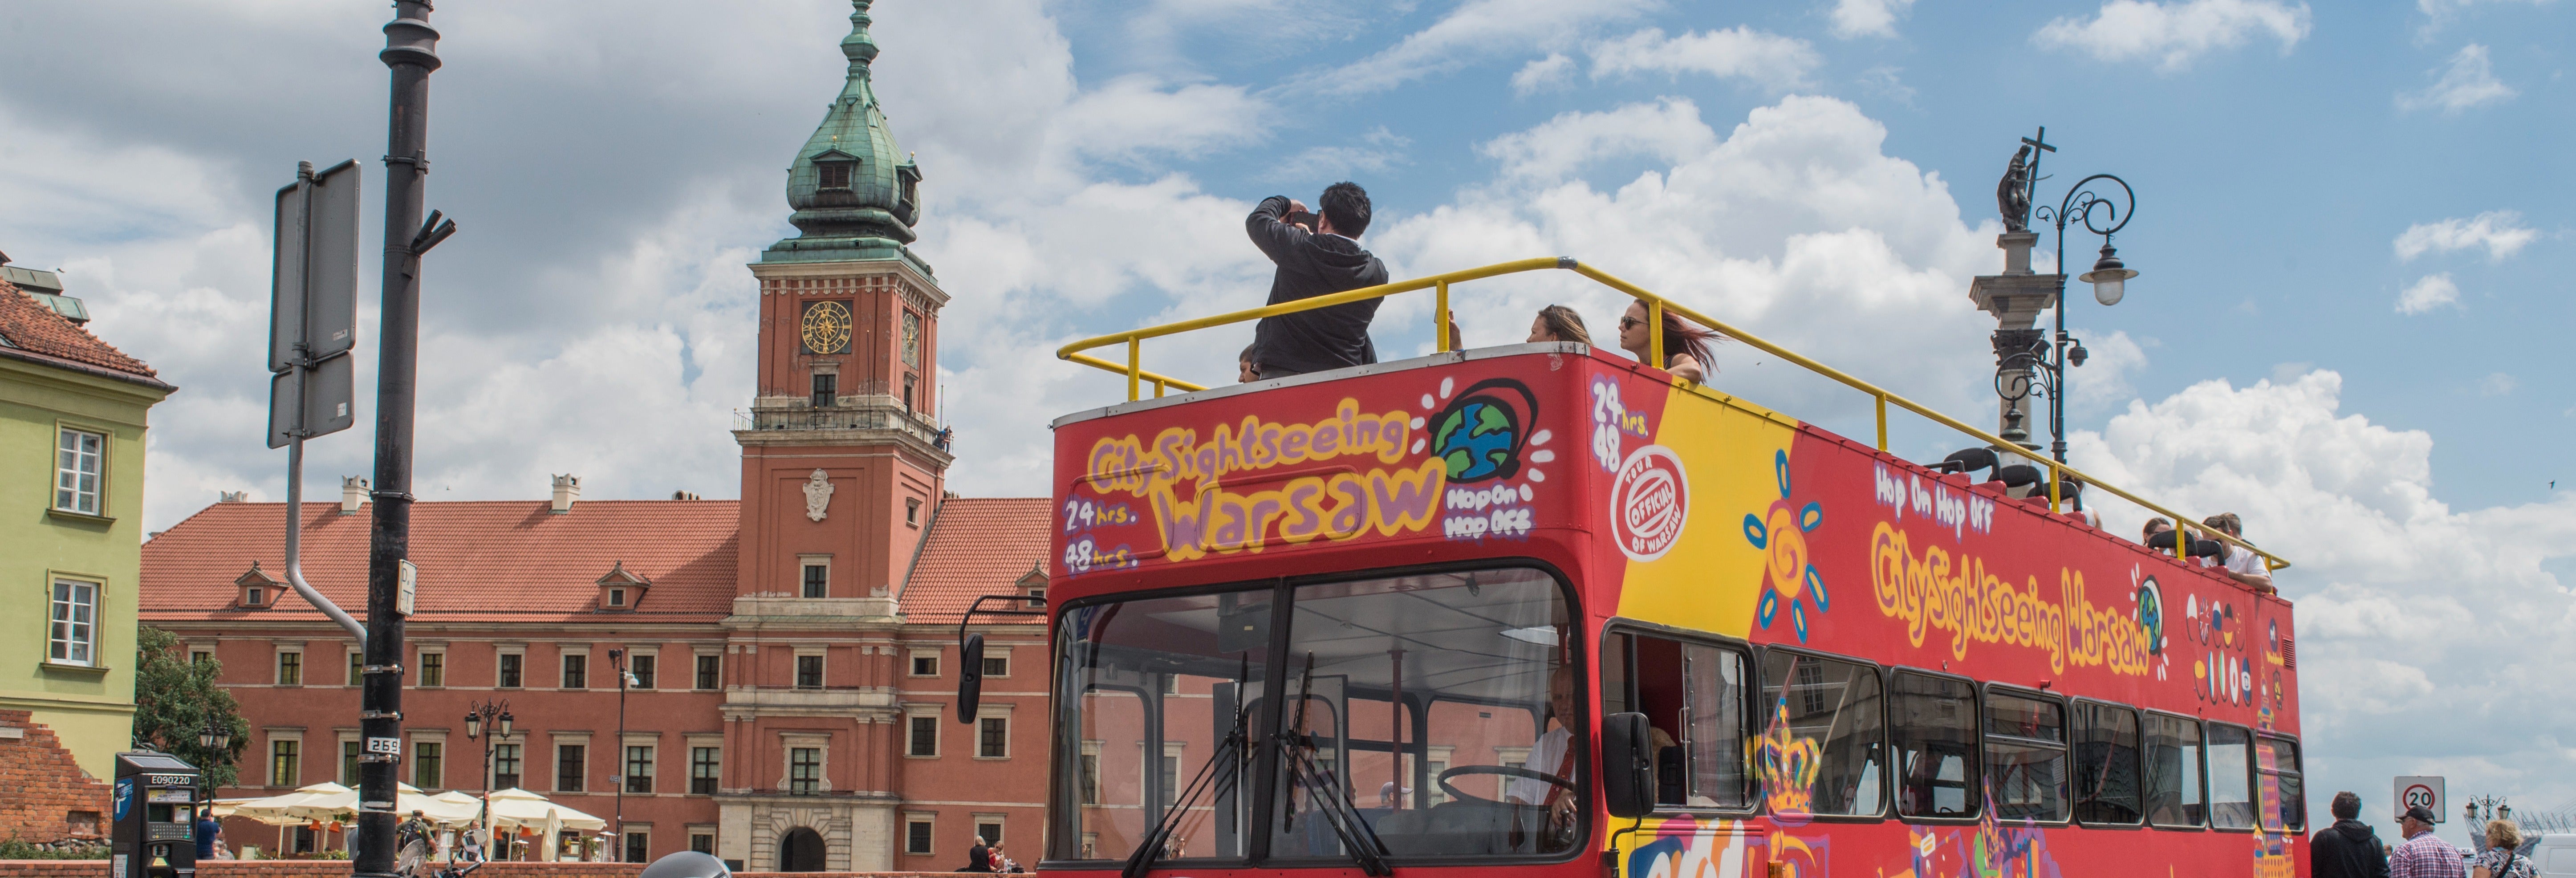 Bus touristique de Varsovie